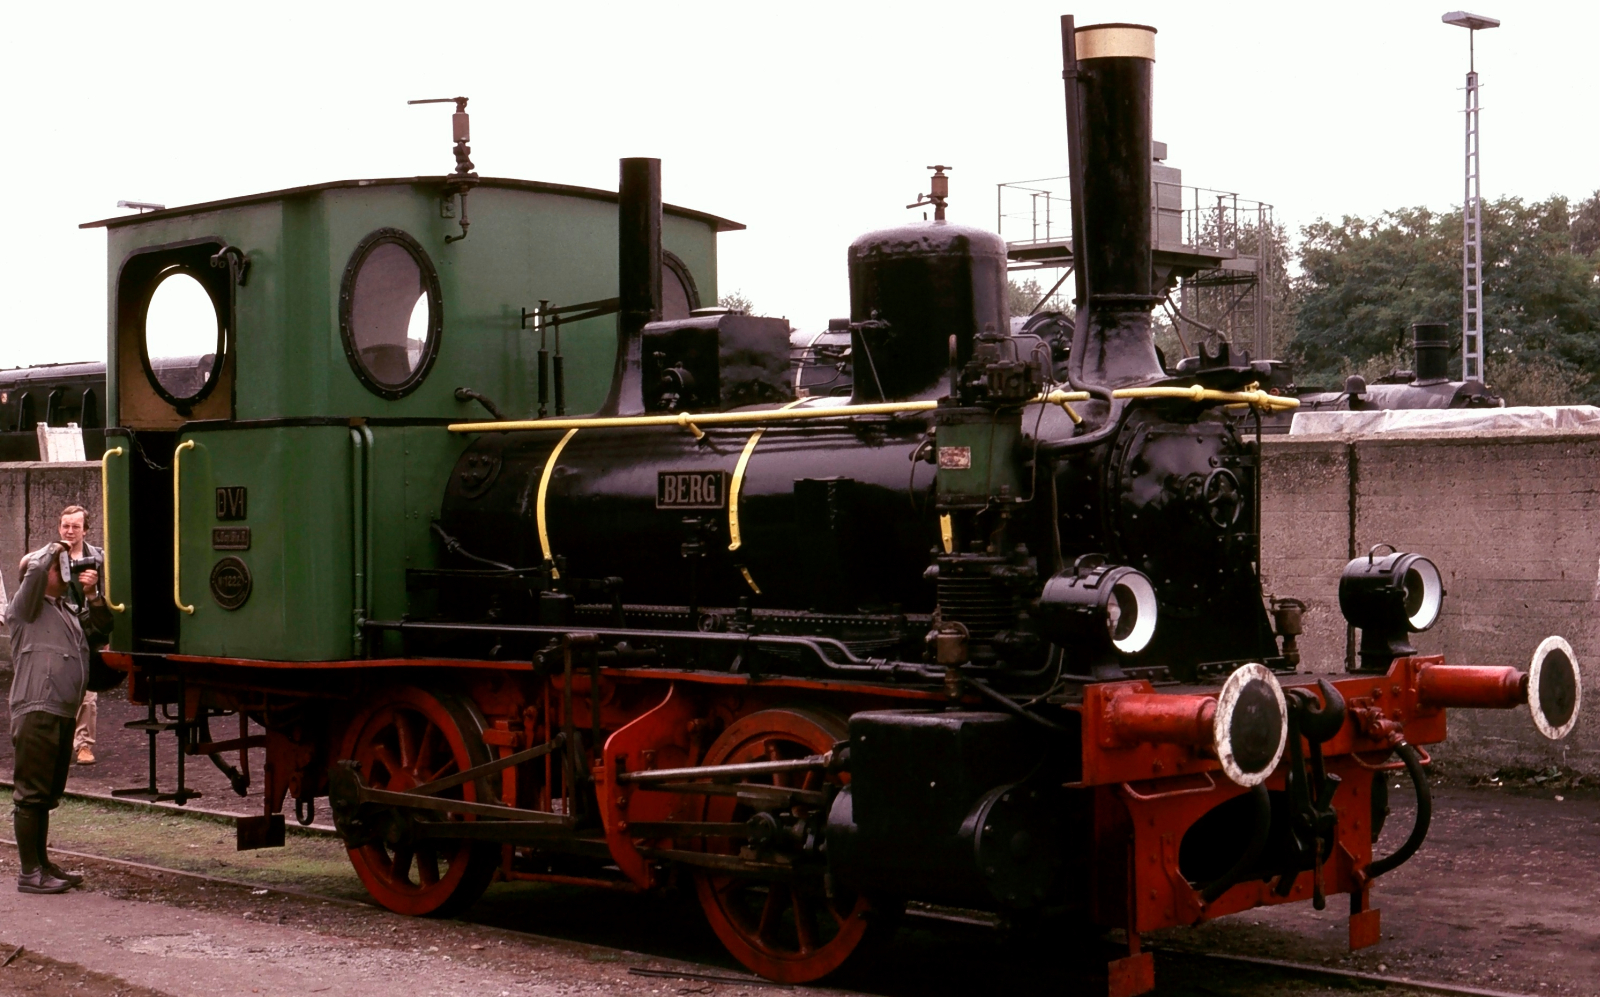 No. 7508 “Berg” in October 1985 in the Bochum-Dahlhausen Railway Museum